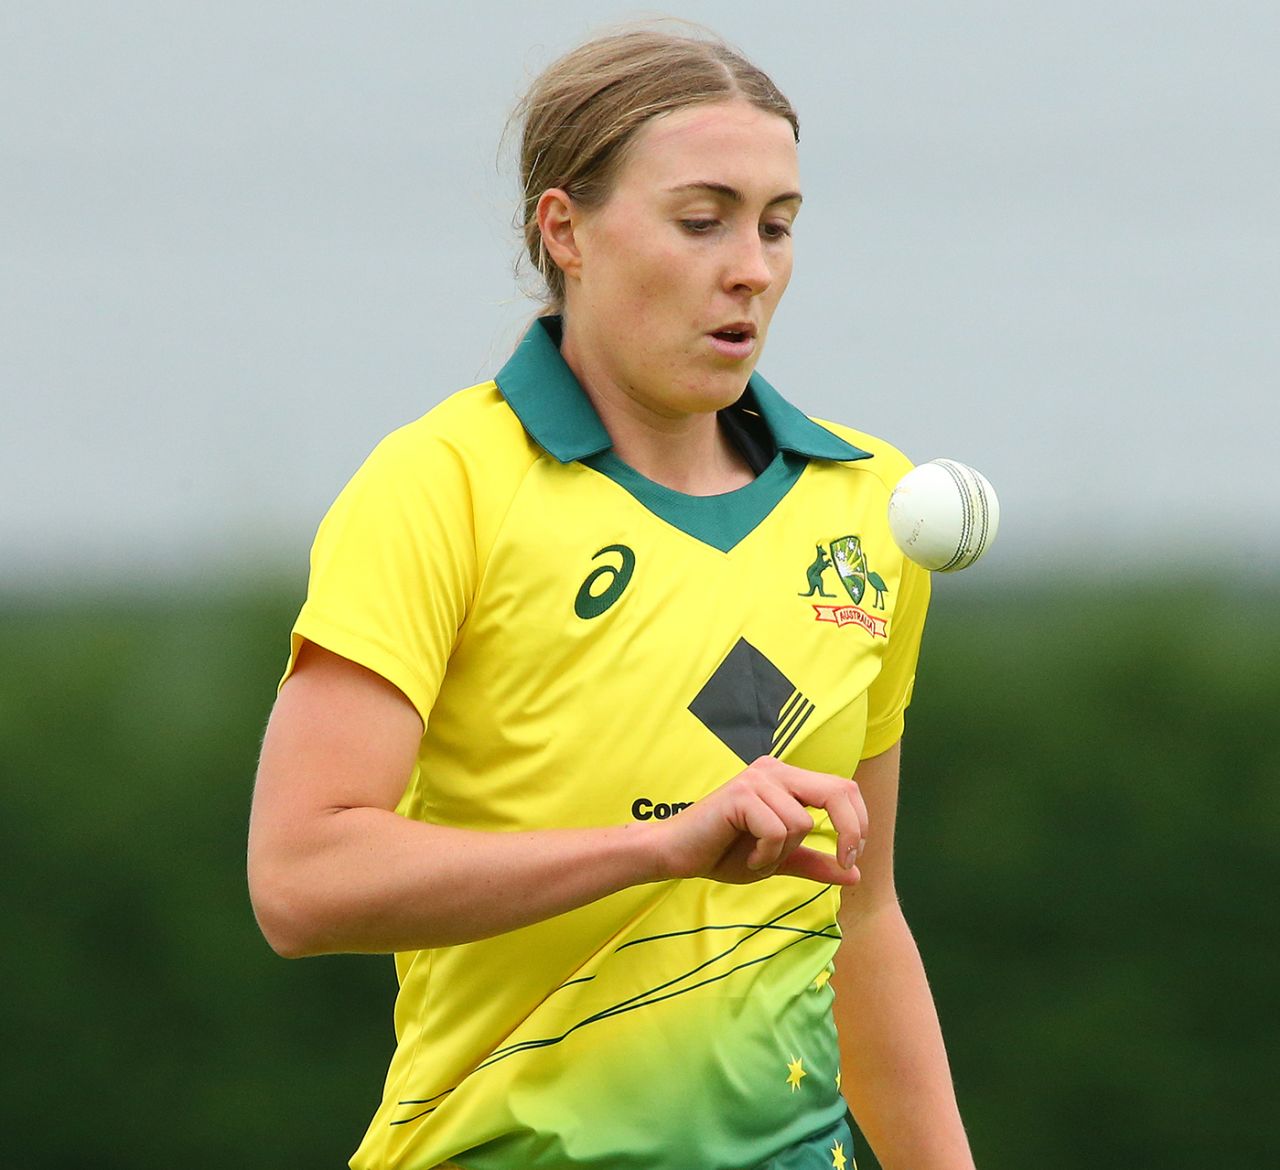 Tayla Vlaeminck prepares to bowl, England Academy v Australians, Tour match, Loughborough, June 26, 2019